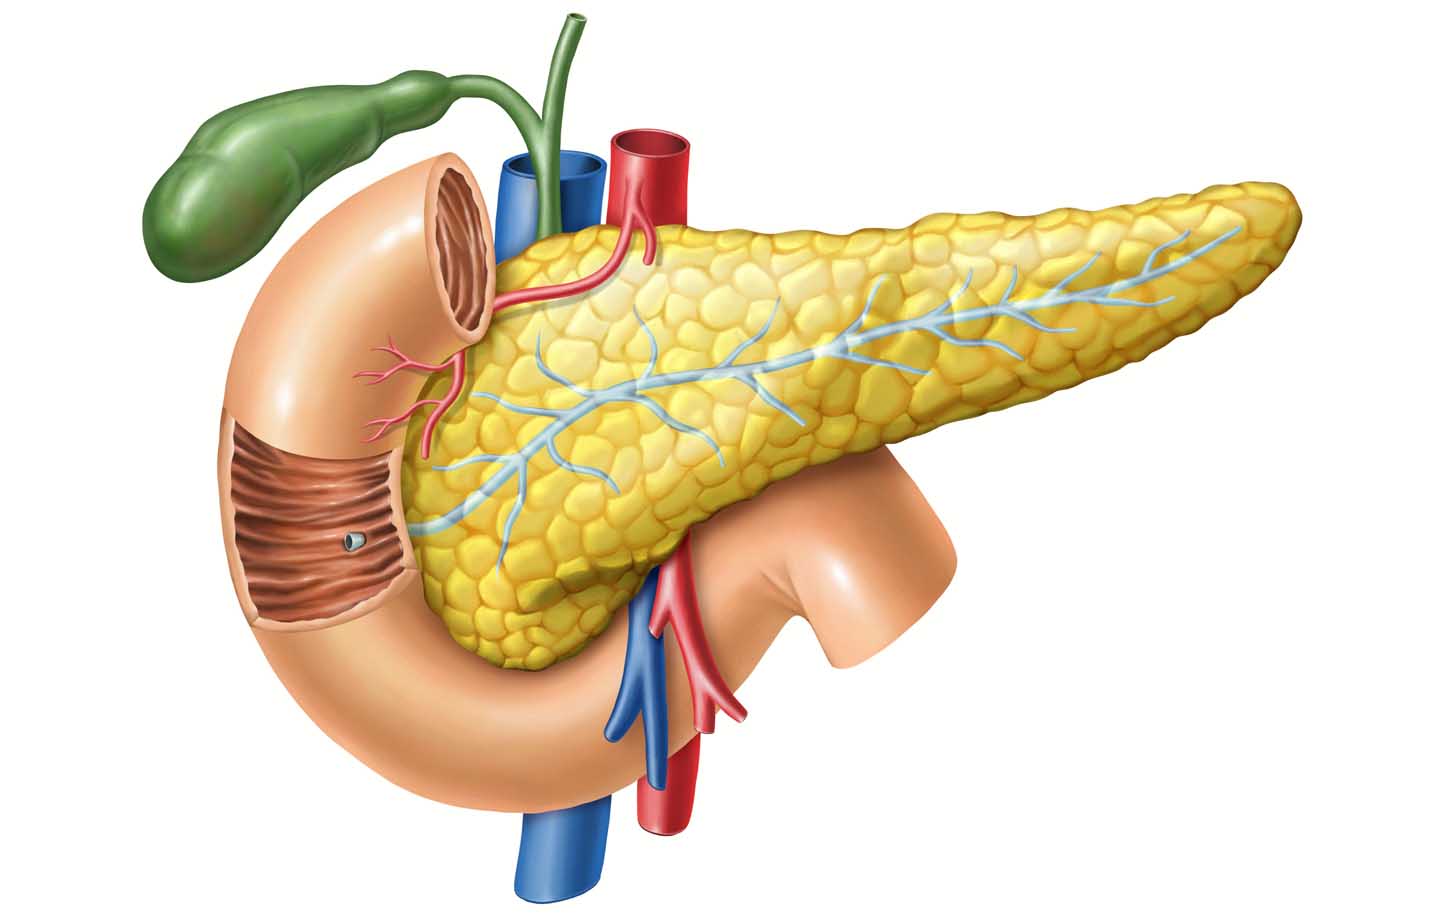 Anatomie van de alvleesklier